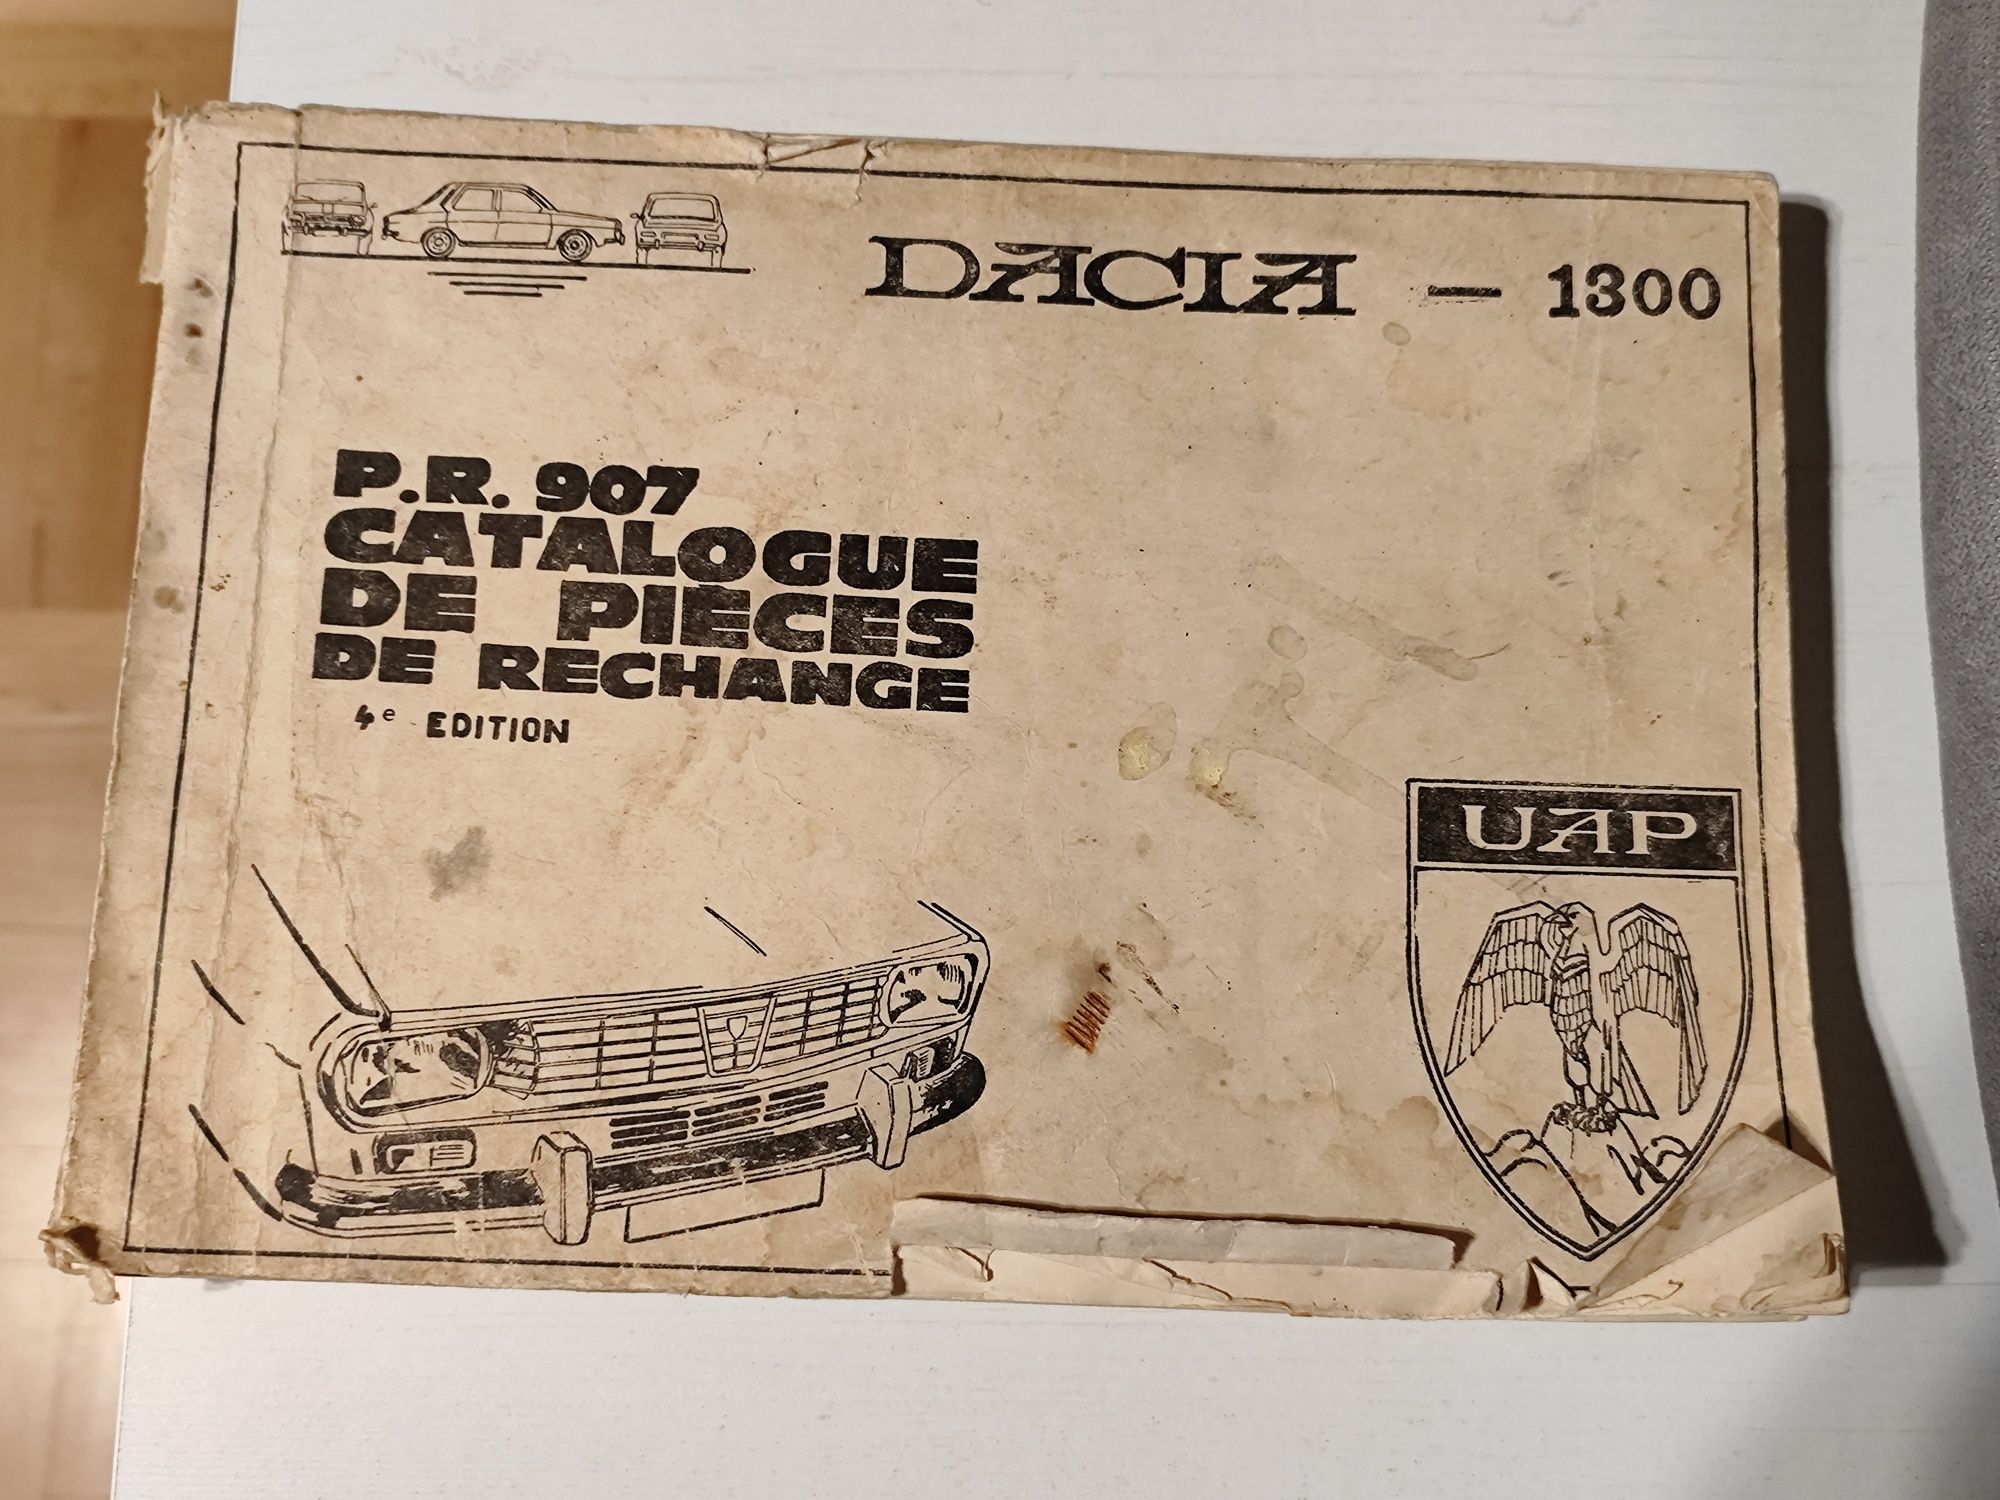 Katalog części Dacia 1300 książka